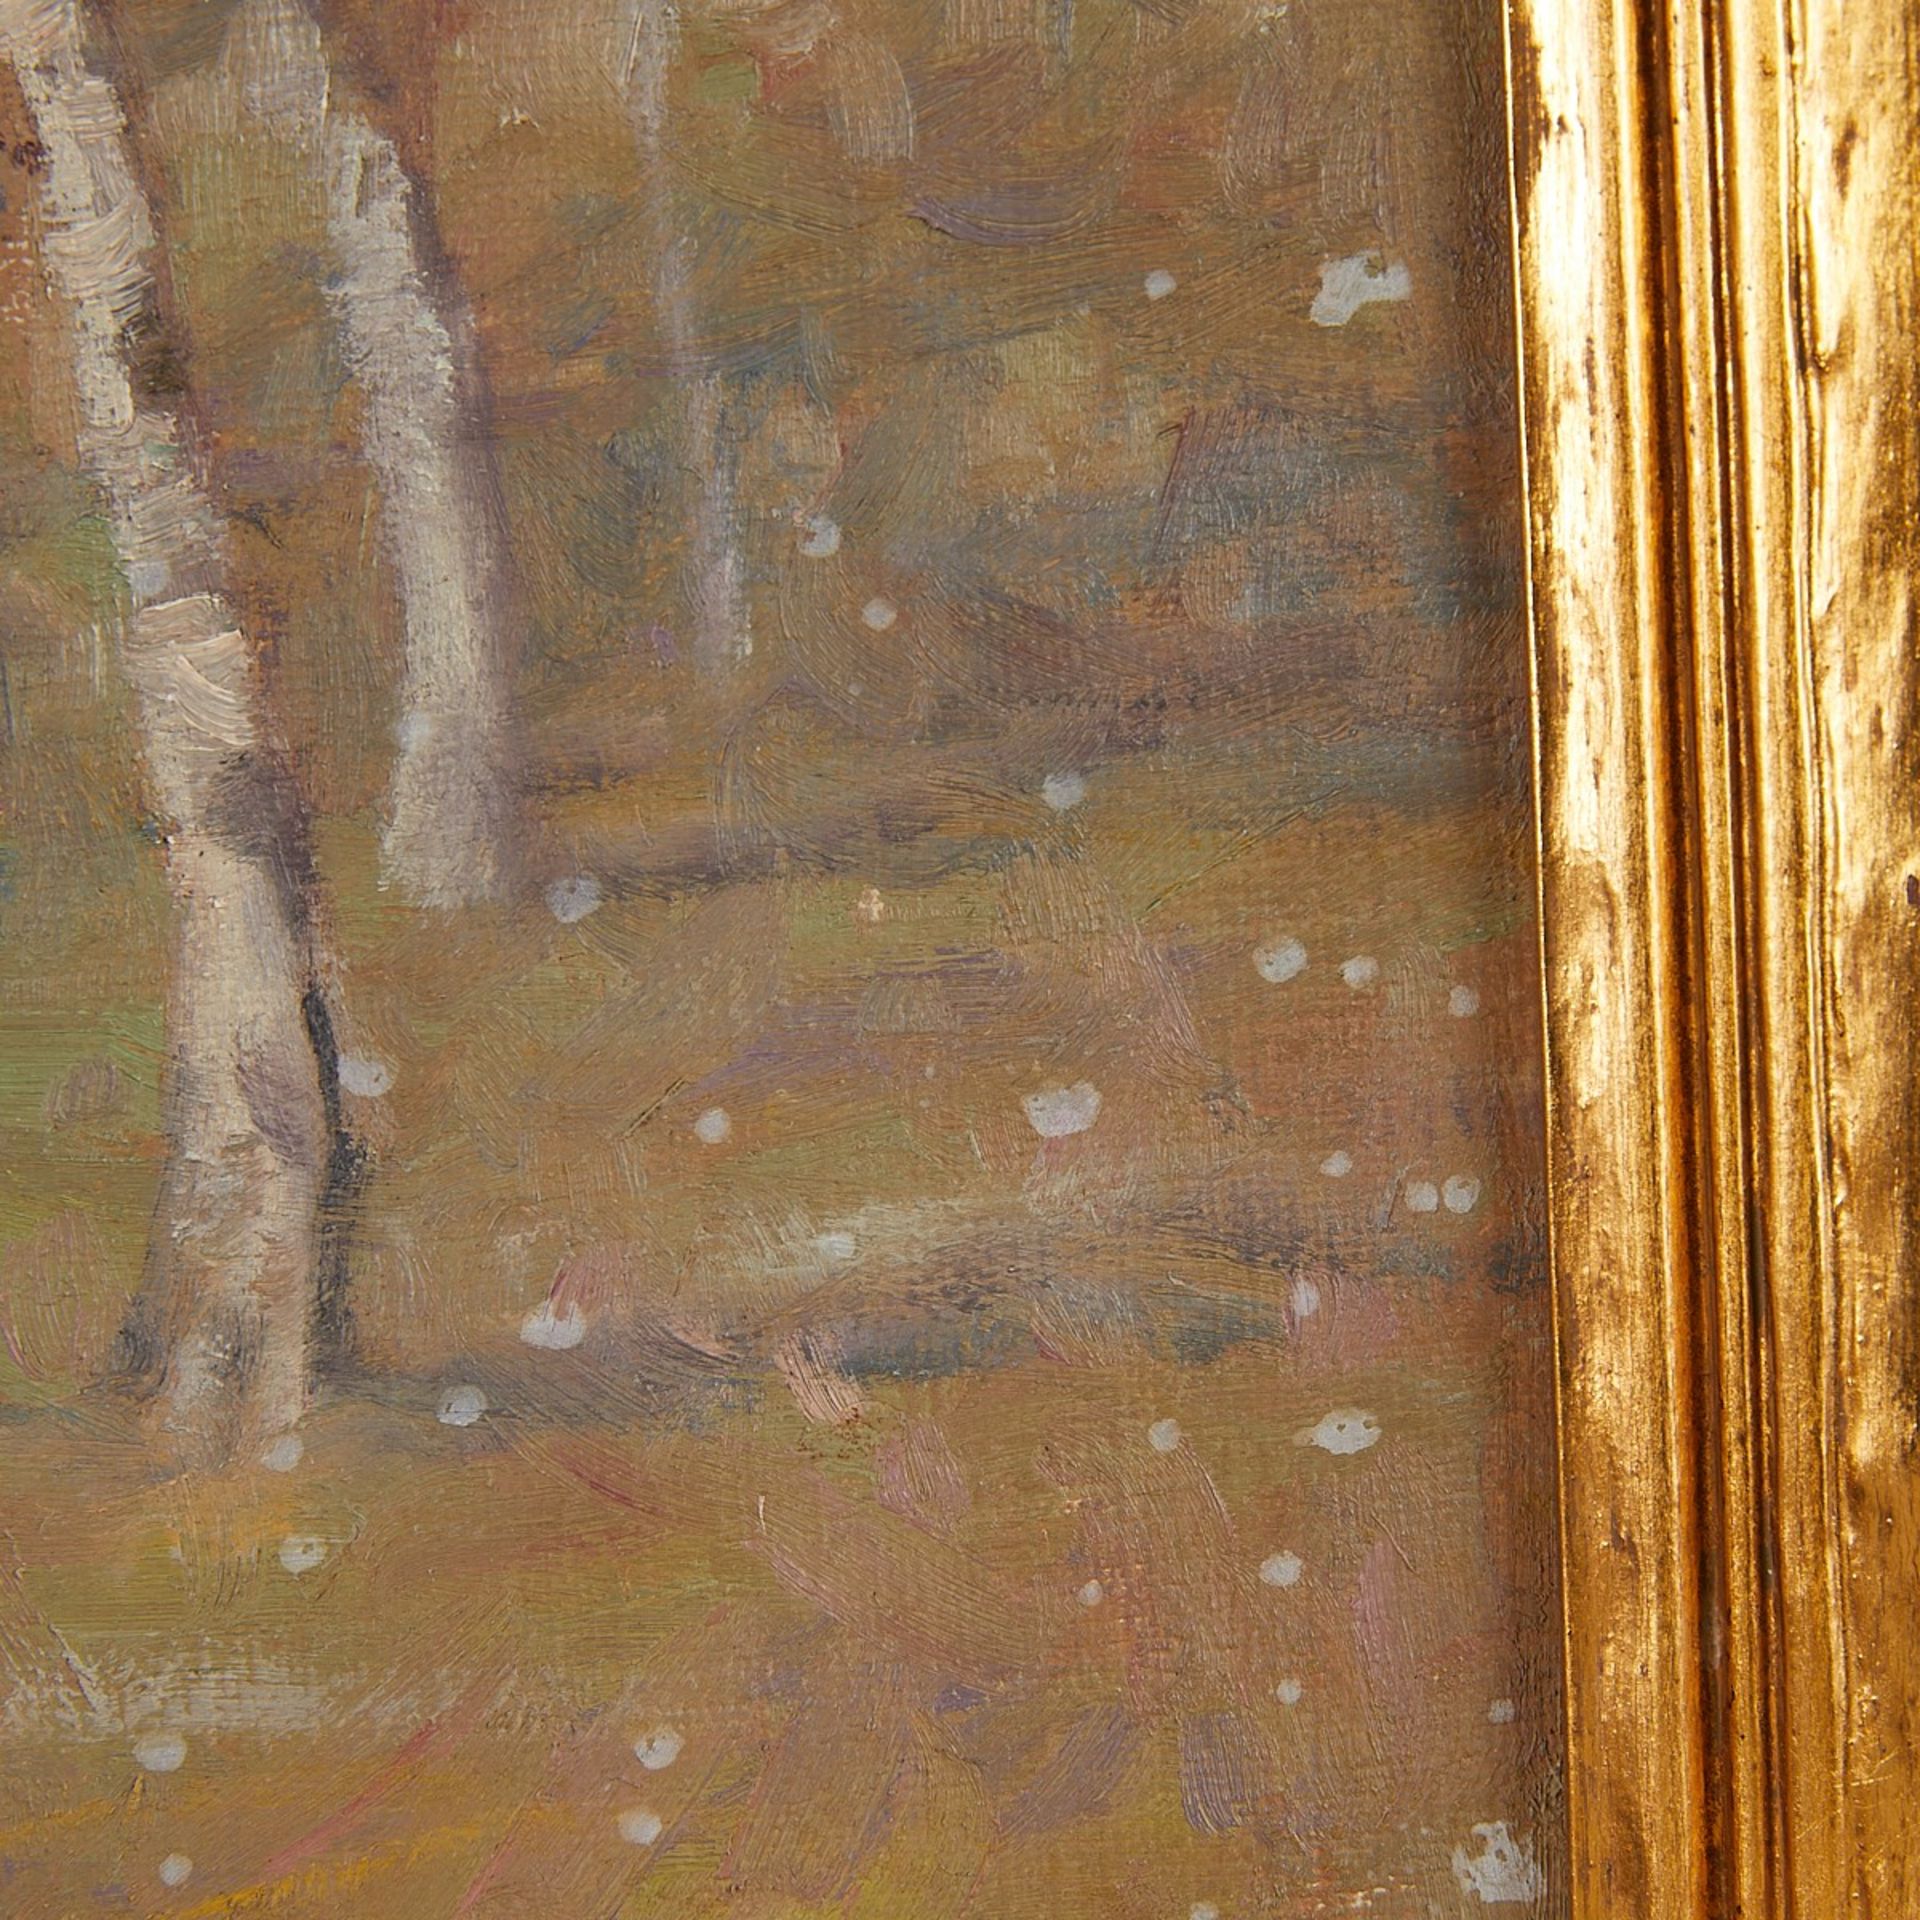 Knute Heldner "Silver Birches" Oil Painting 1932 - Bild 6 aus 8